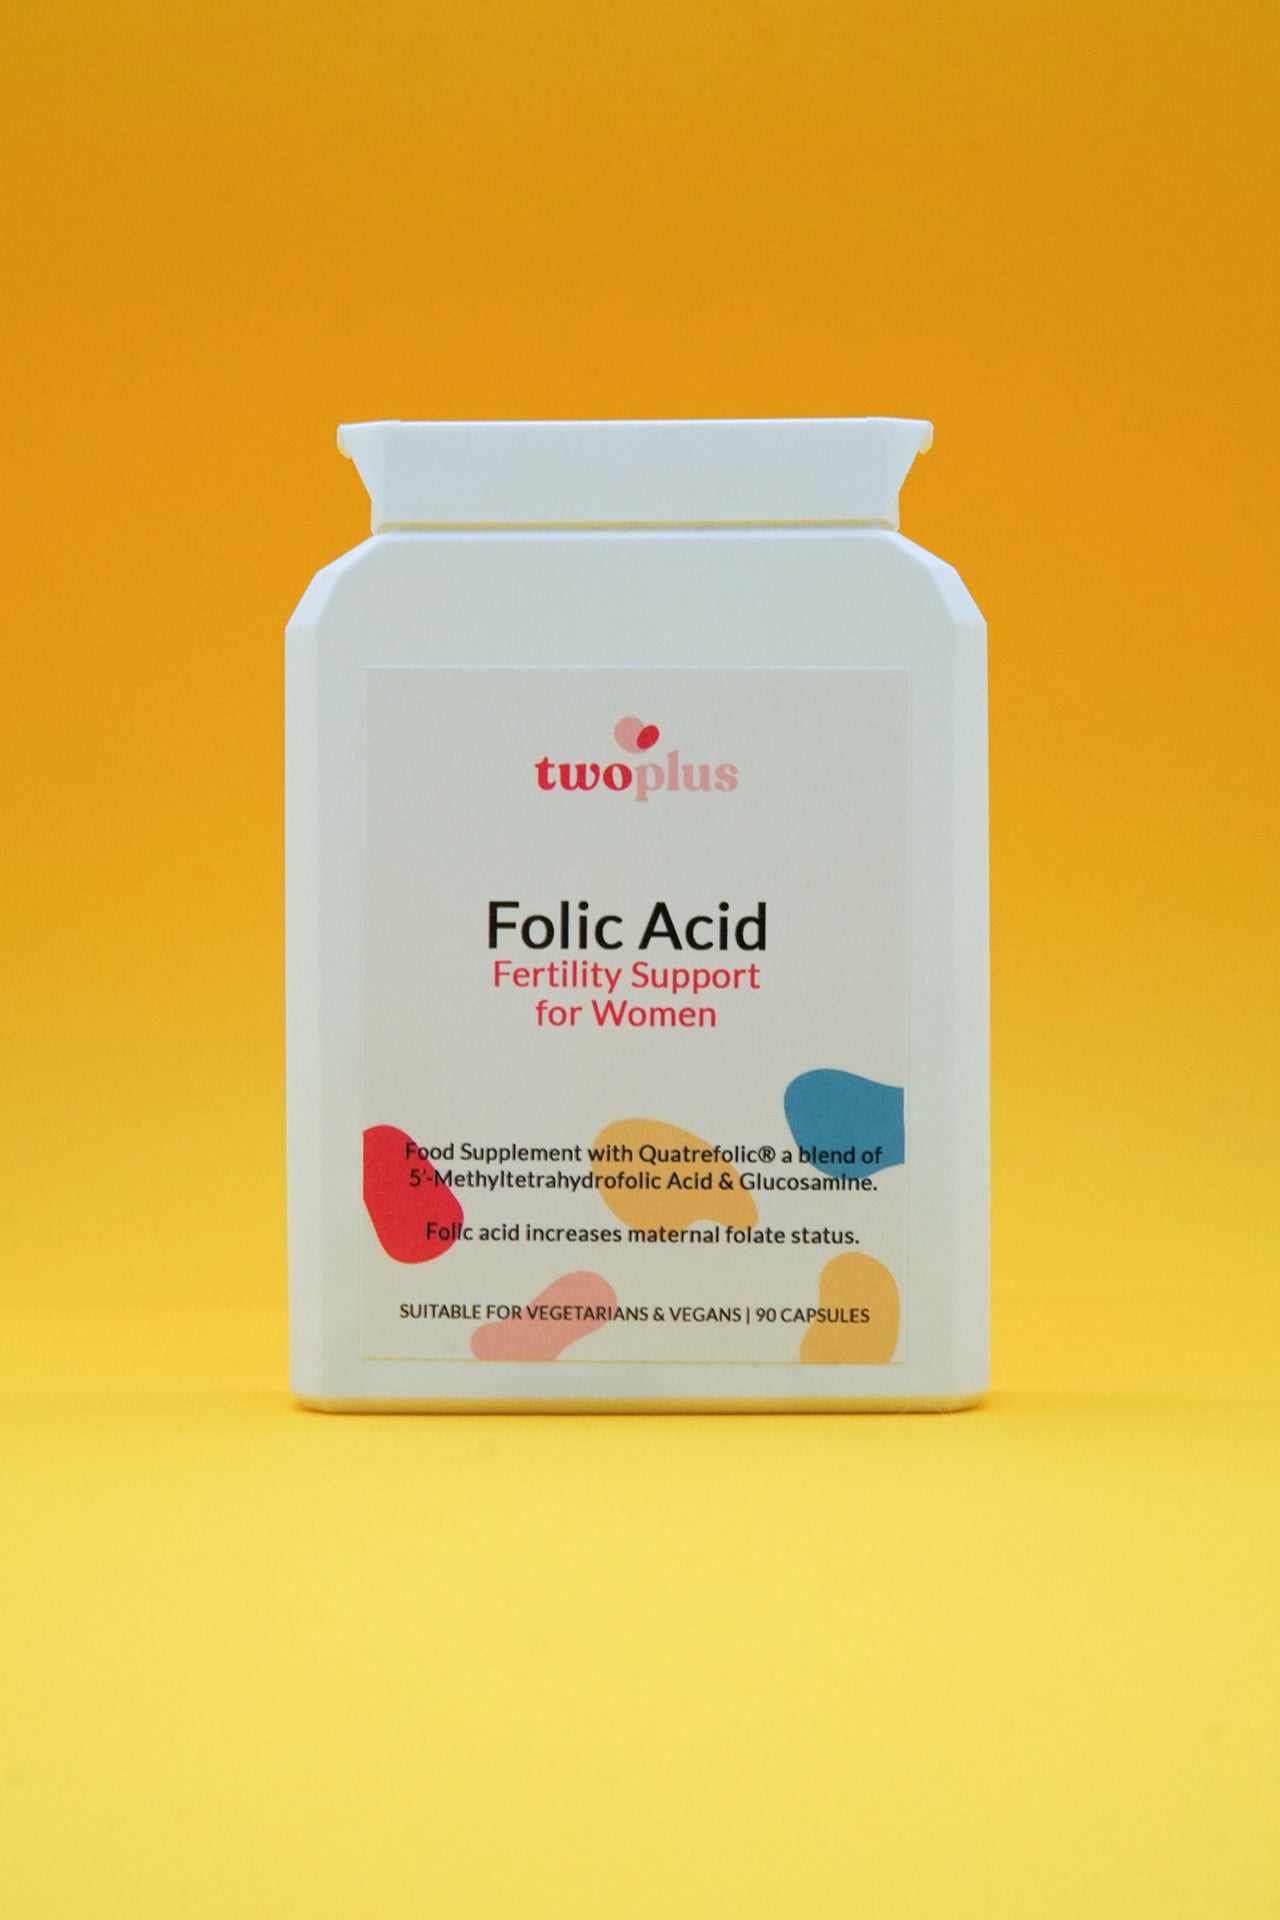 twoplus Fertility Folic Acid Fertility Support For Women bottle